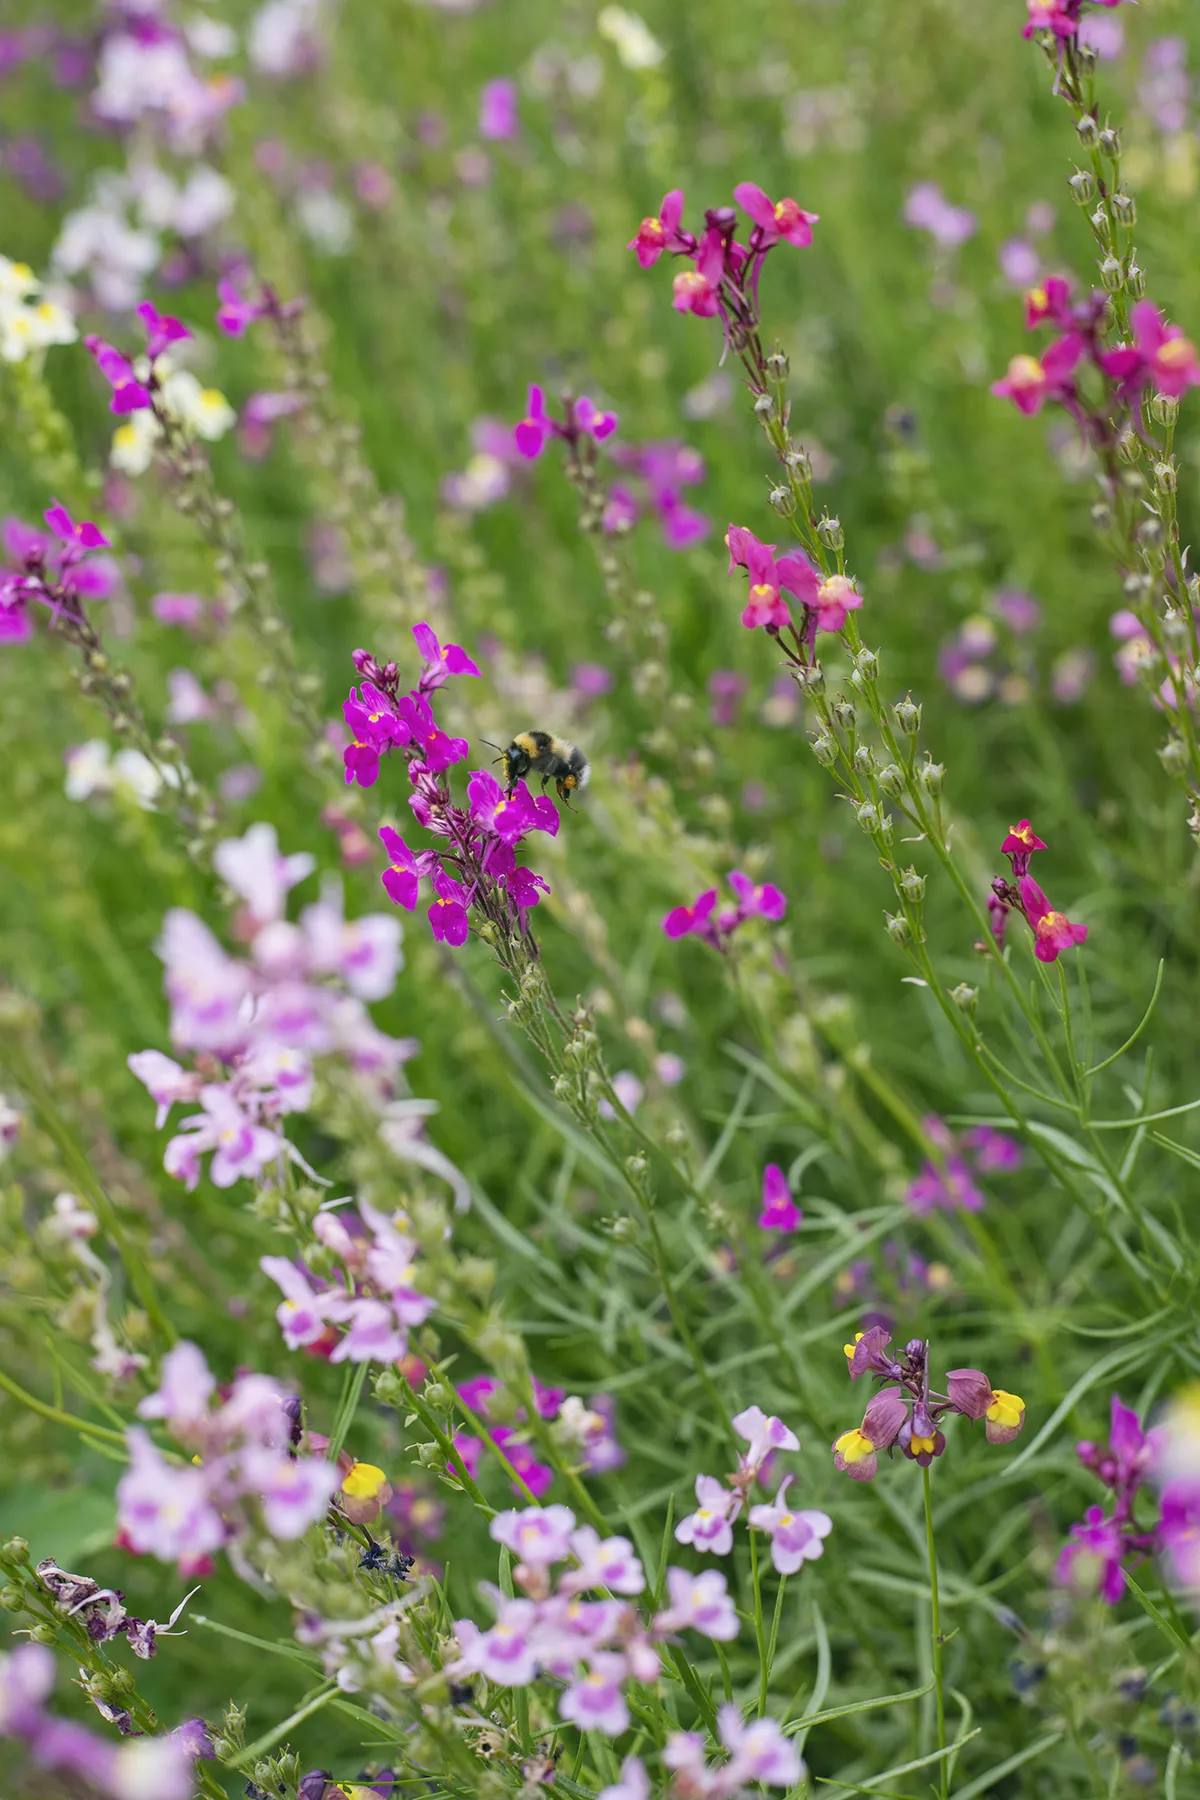 Le paysage et l'amélioration de celui-ci, notamment grâce à l'ajout de fleurs en bordure et dans nos cultures, fait partie intégrante de notre travail quotidien. Les fleurs attirent les insectes pollinisateurs importants pour les cultures. Certaines sont comestibles et ajoutées au mesclun. Nous travaillons également avec des apiculteurs.